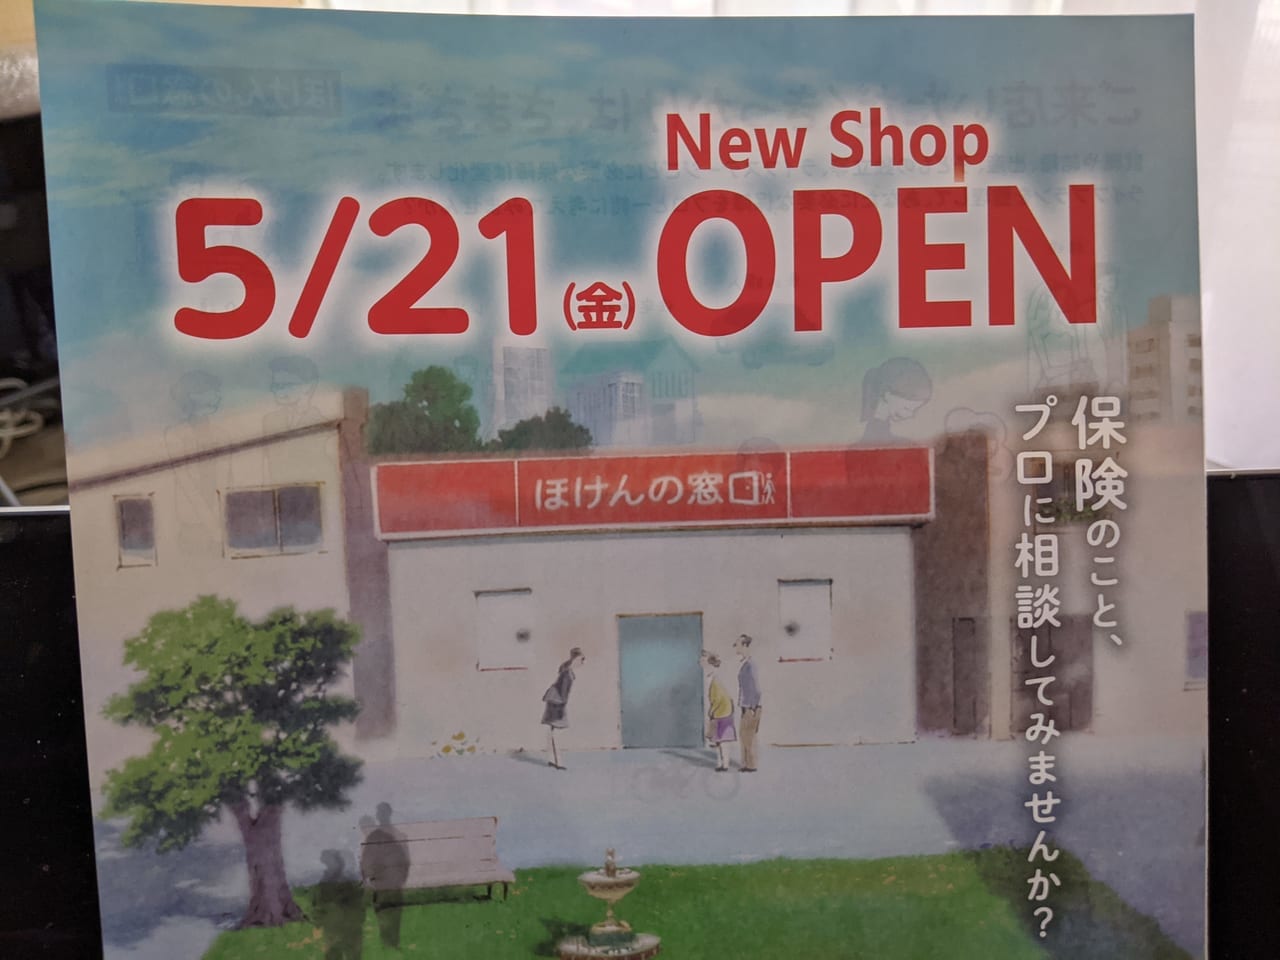 東京イースト21にオープンしたほけんの窓口東陽町イースト21店のオープンチラシ